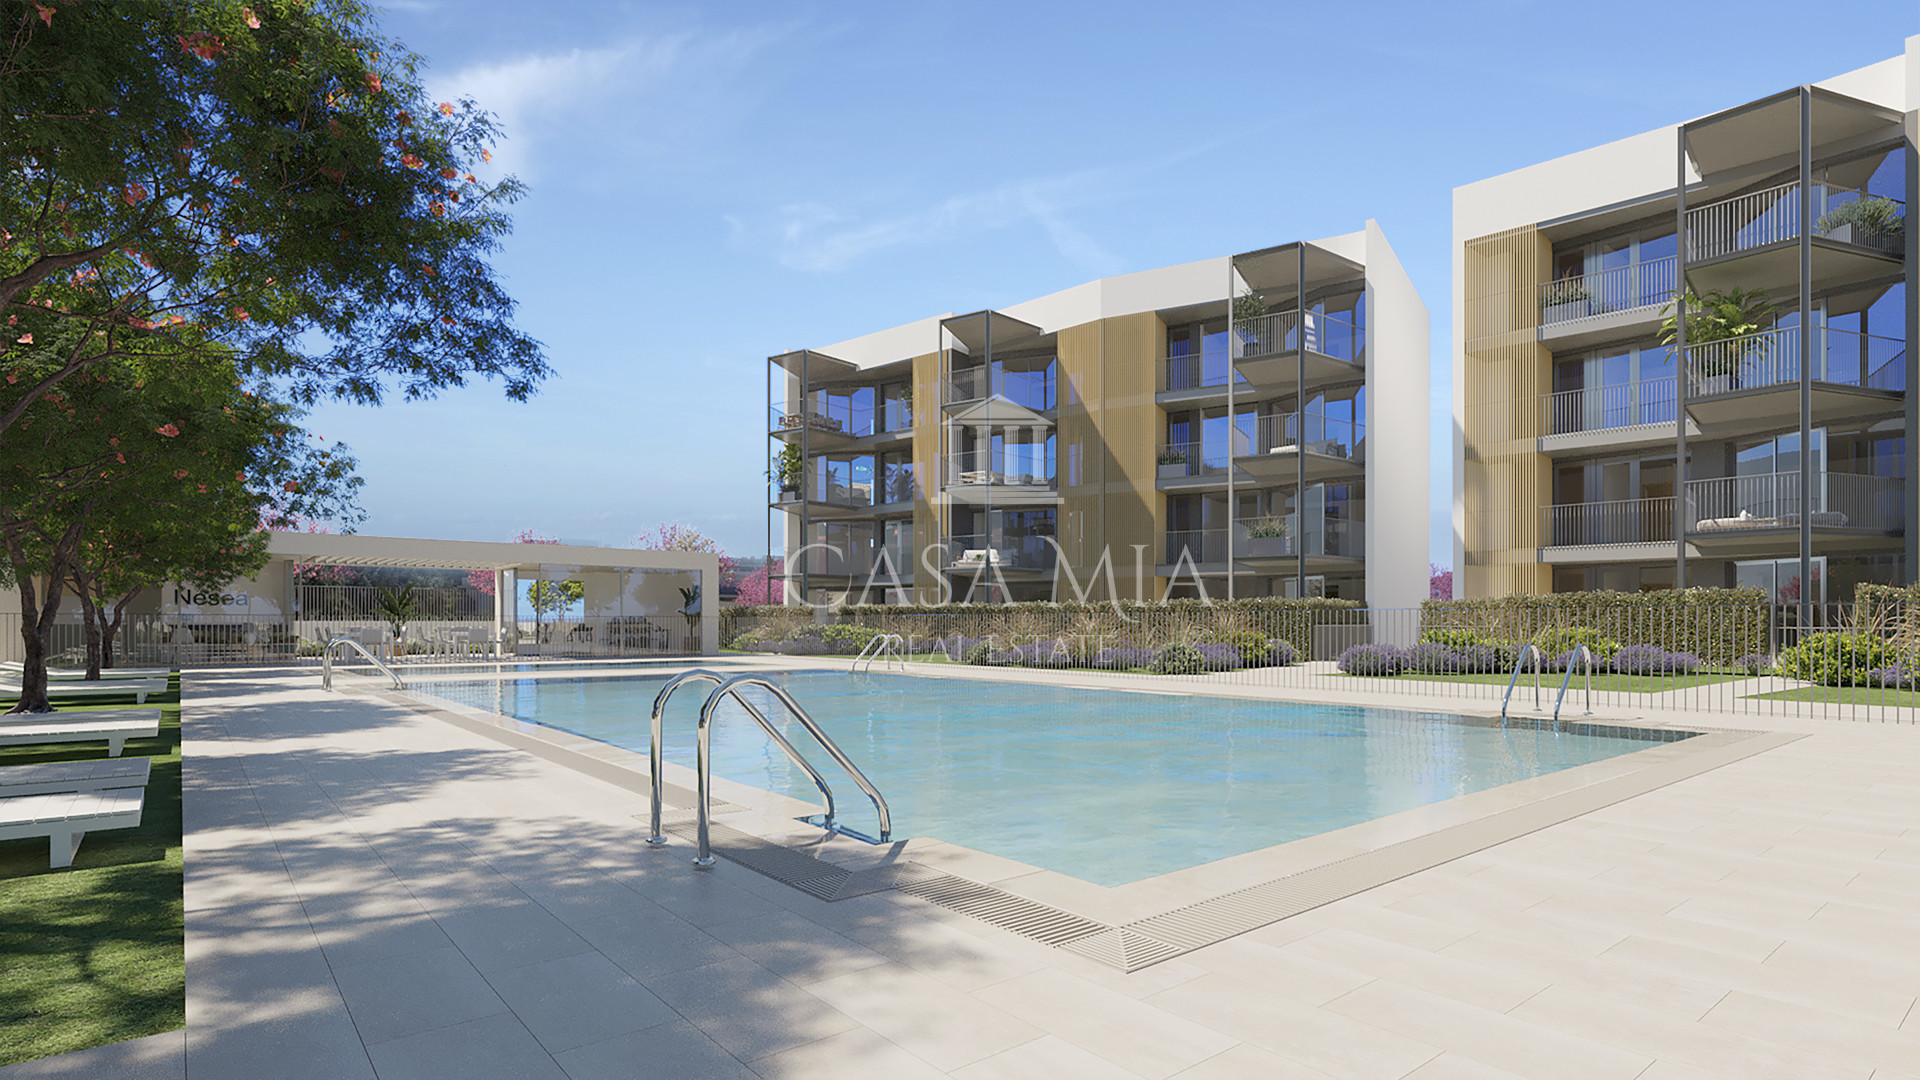 Projekt: Nowe mieszkanie z basenem w pobliżu plaży, Palmanova